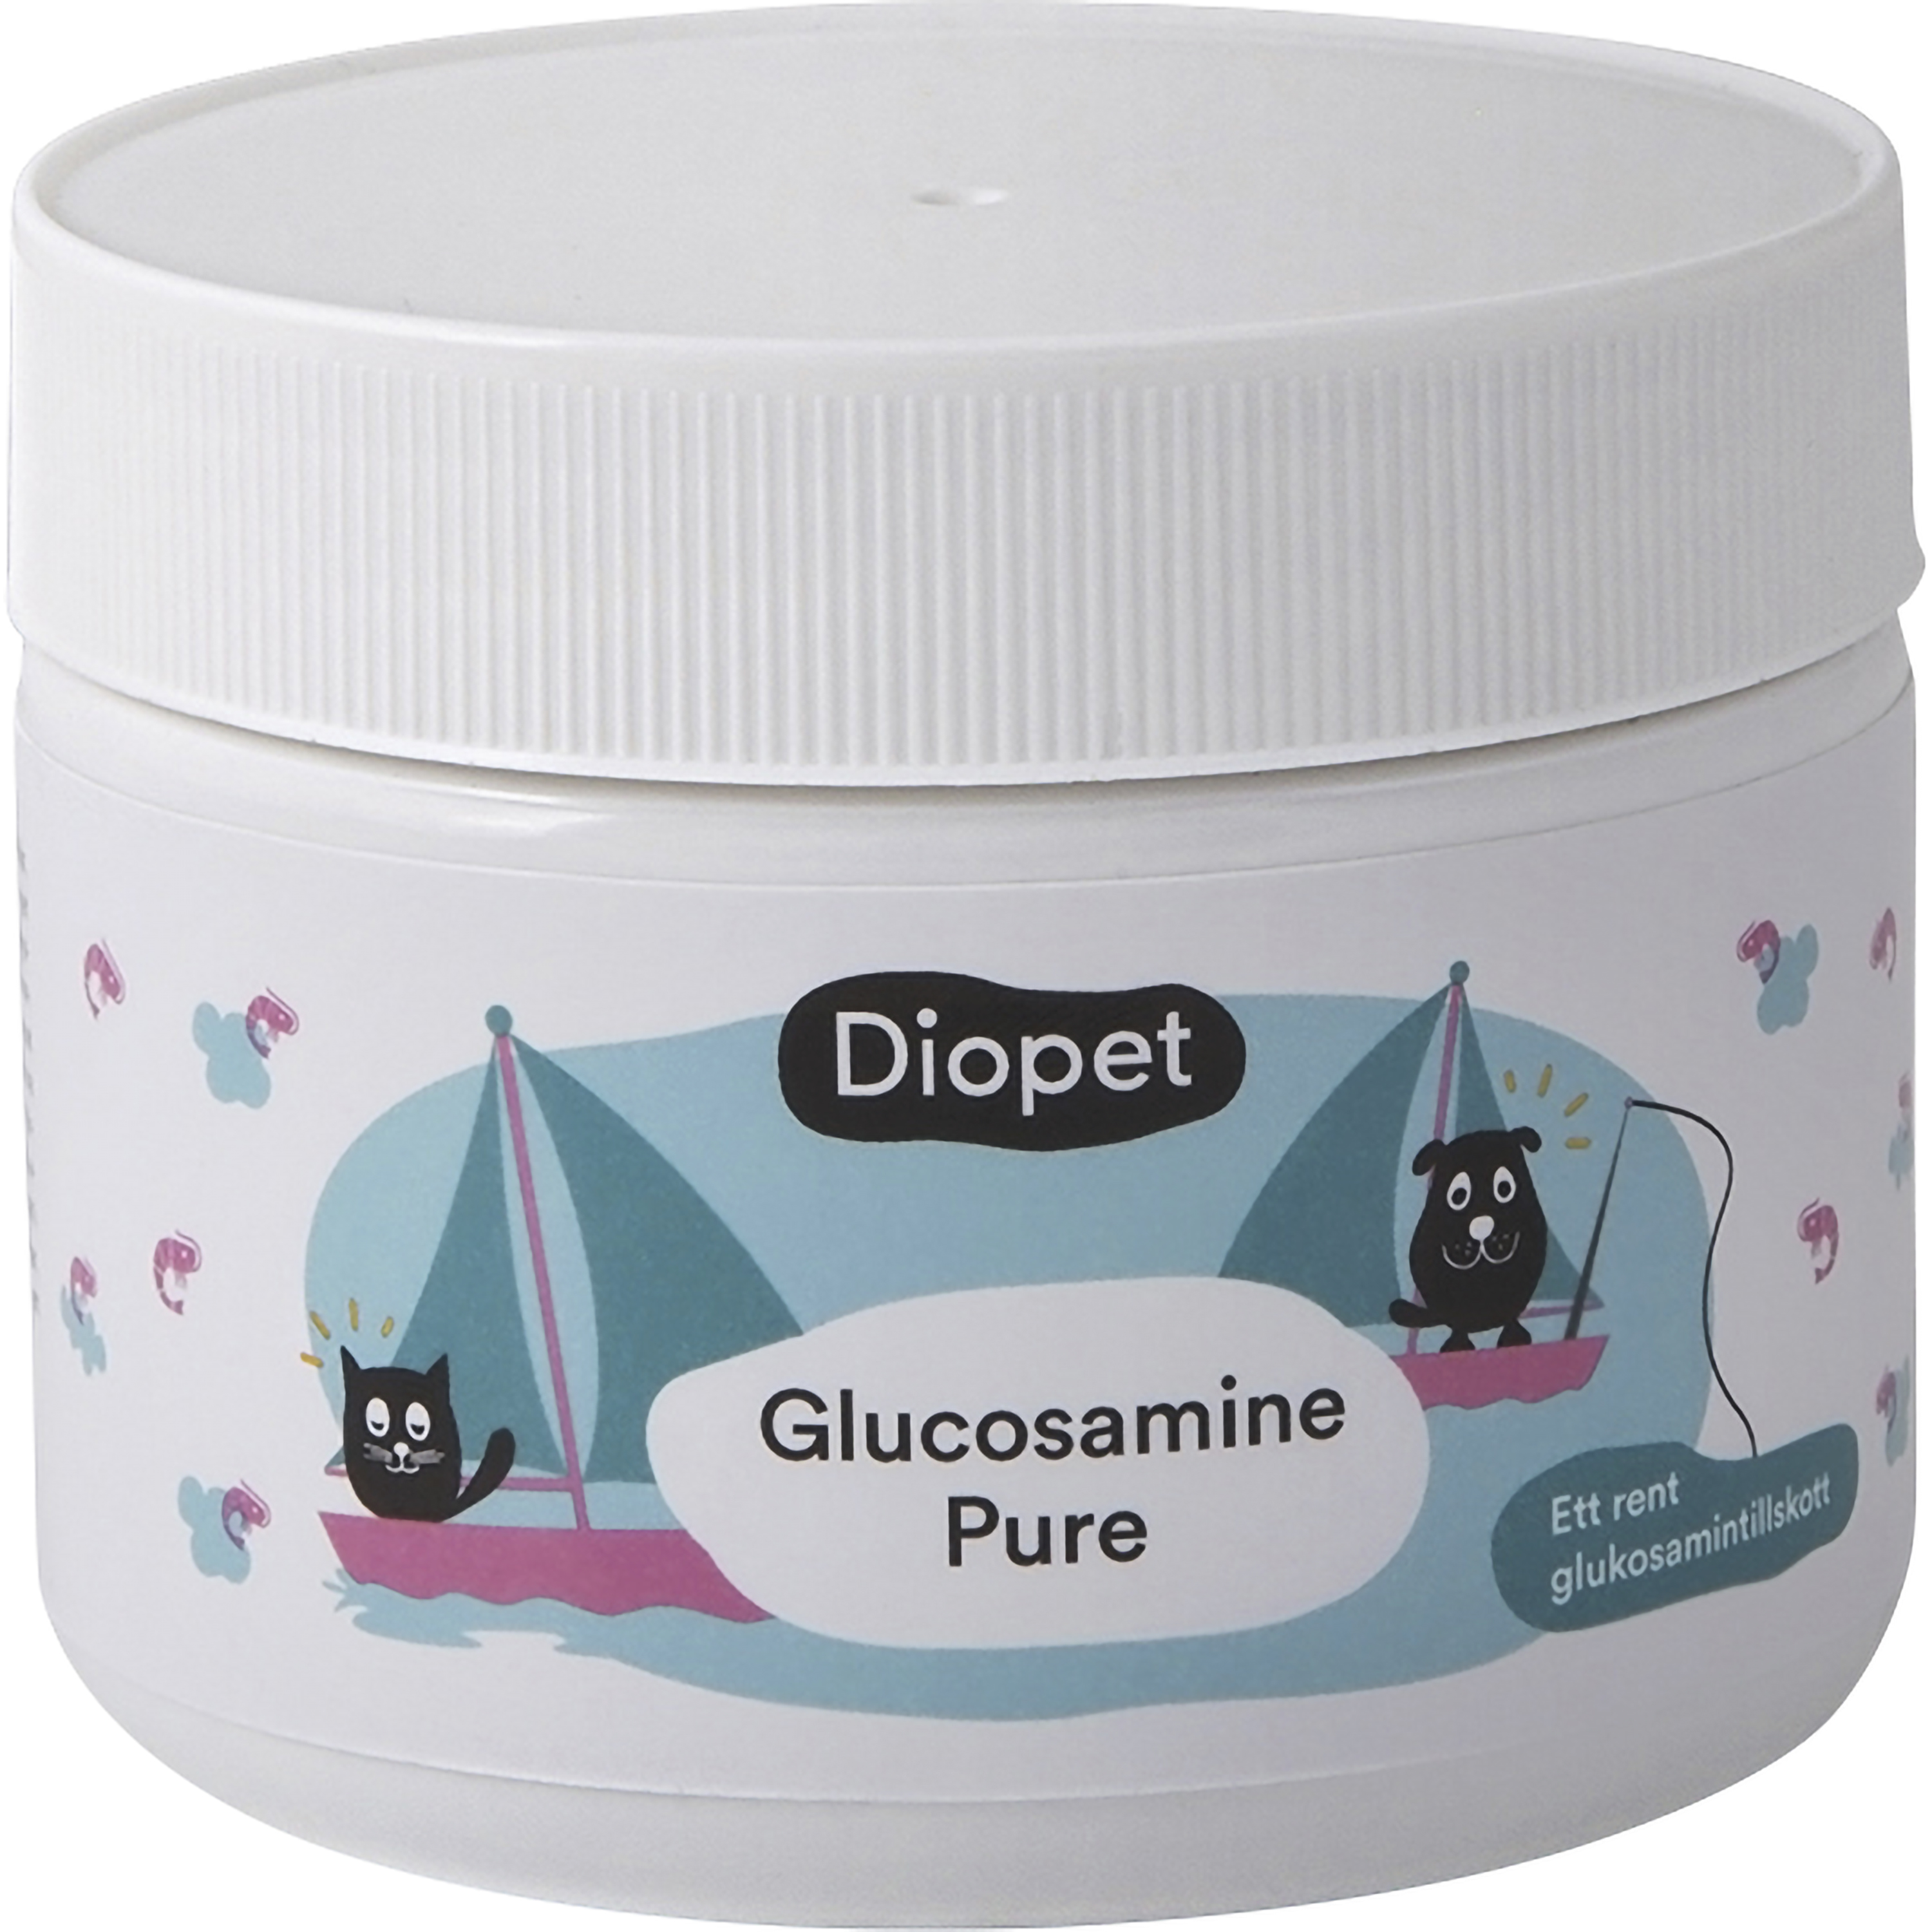 Kosttillskott Diopet Glukosamin Pure 150g